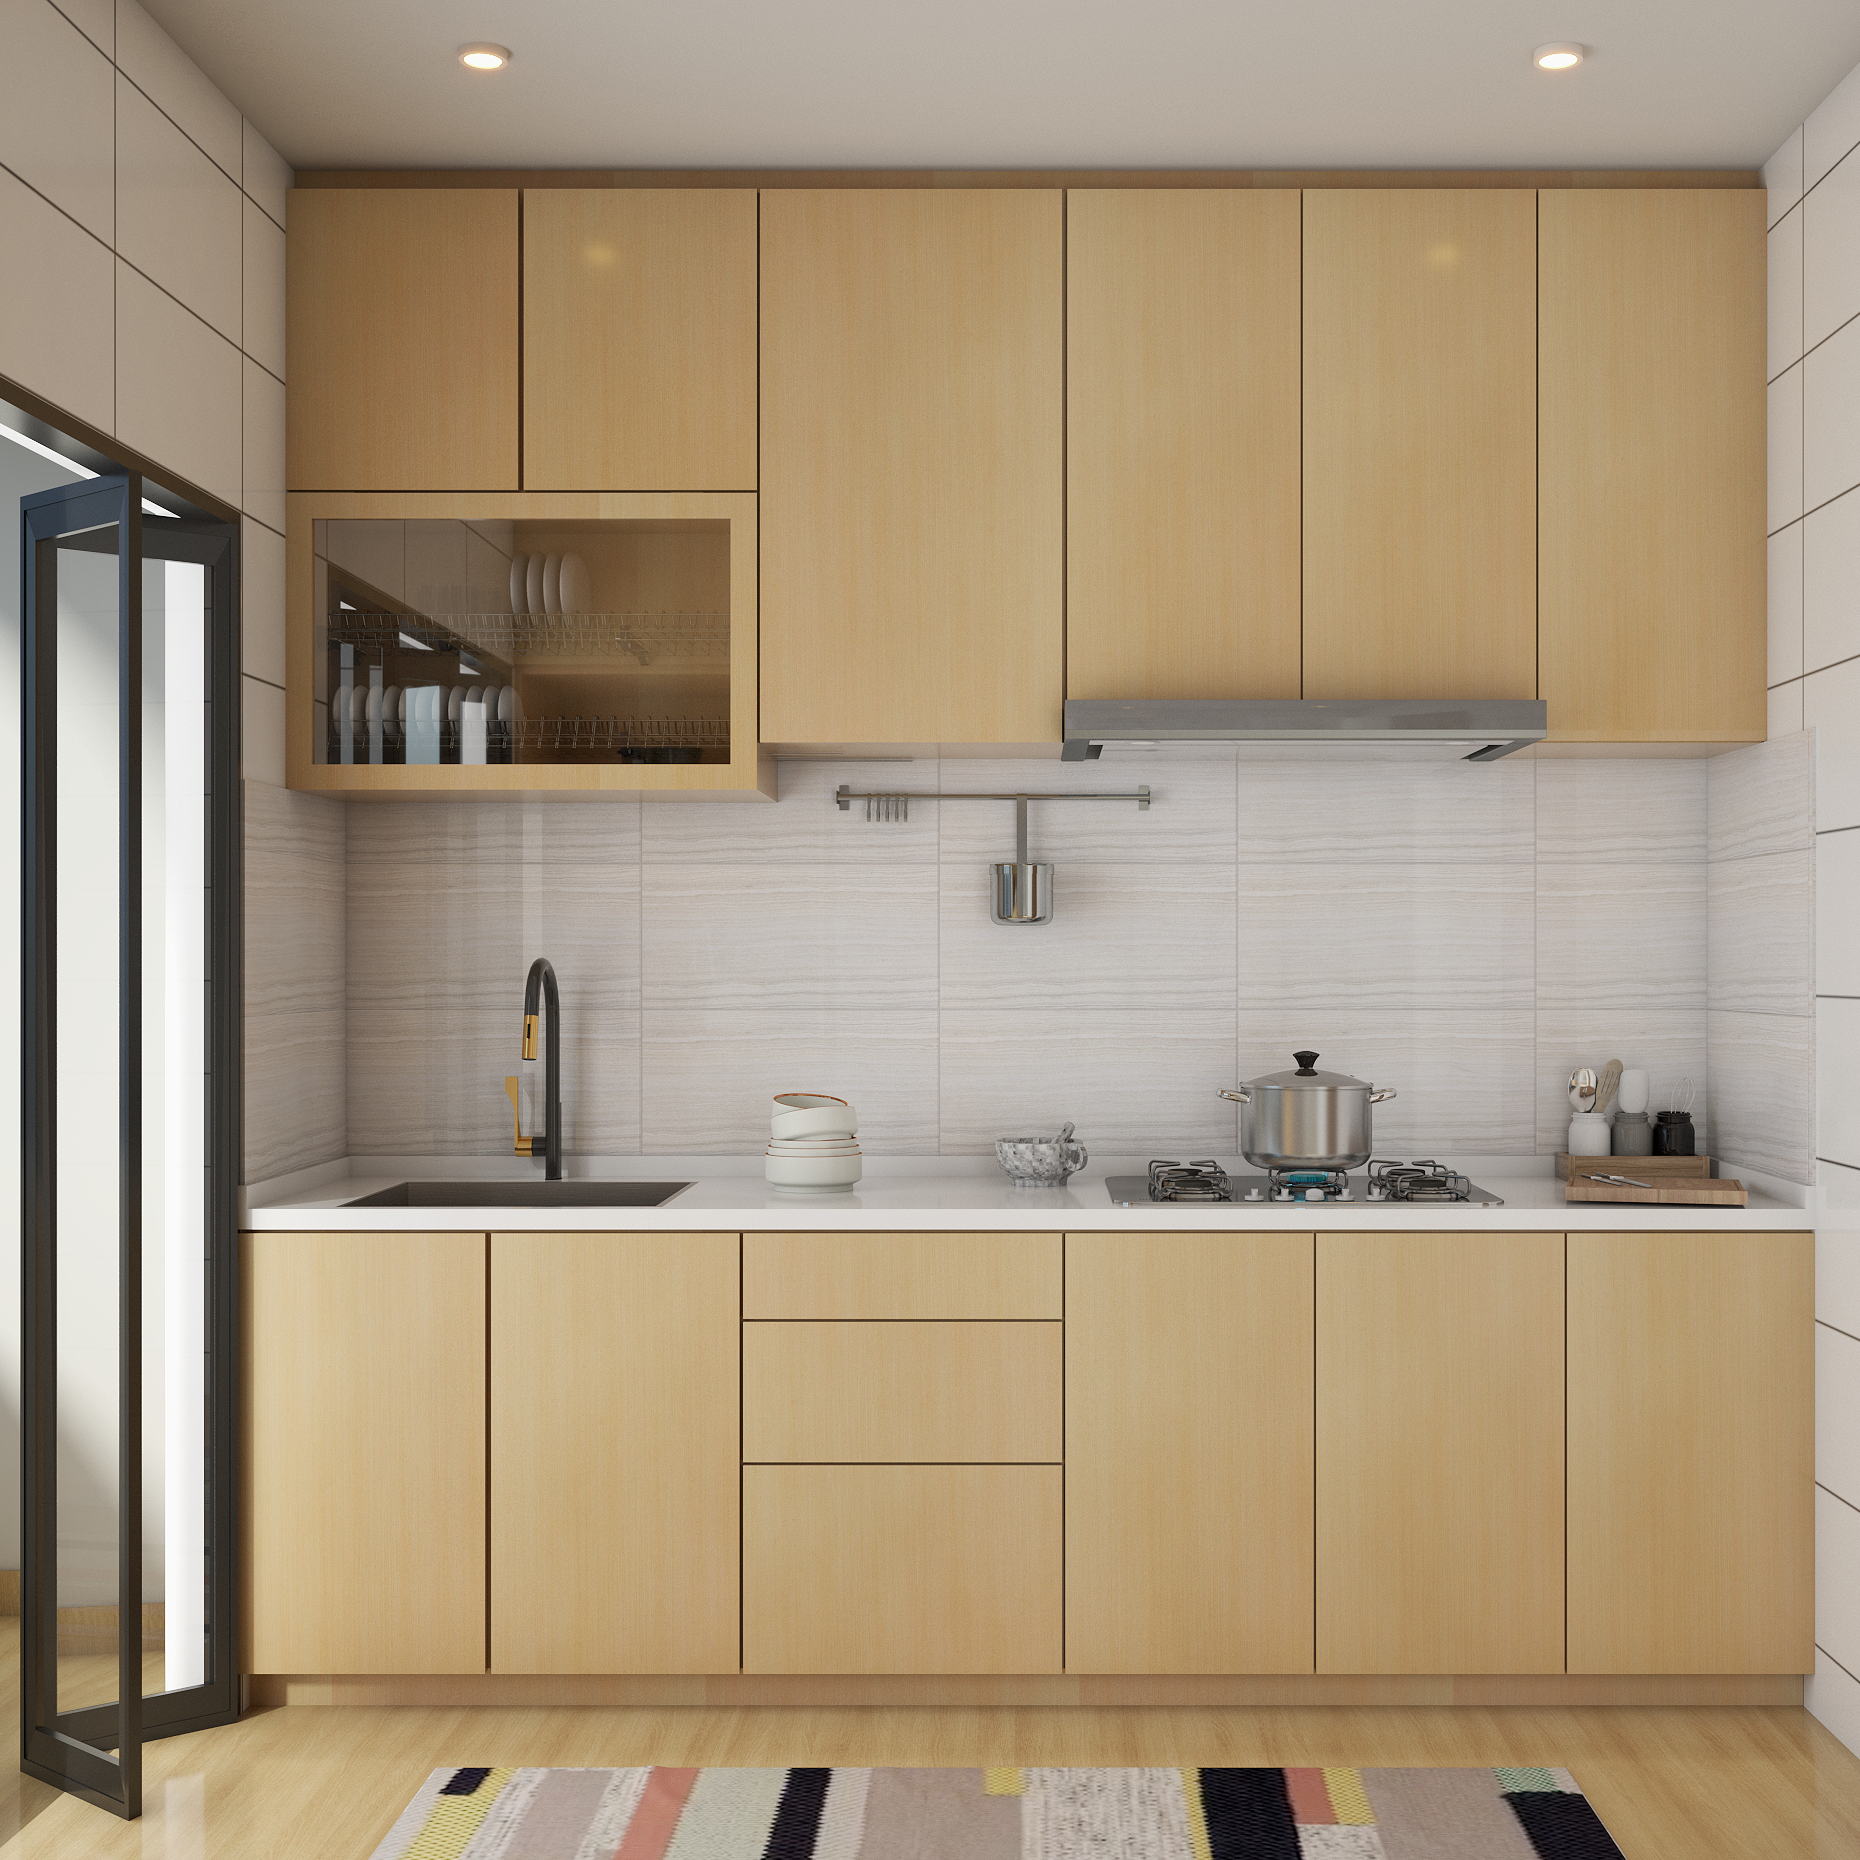 HDB Kitchen Designs   Modern Kitchen Interior Design Ideas in ...